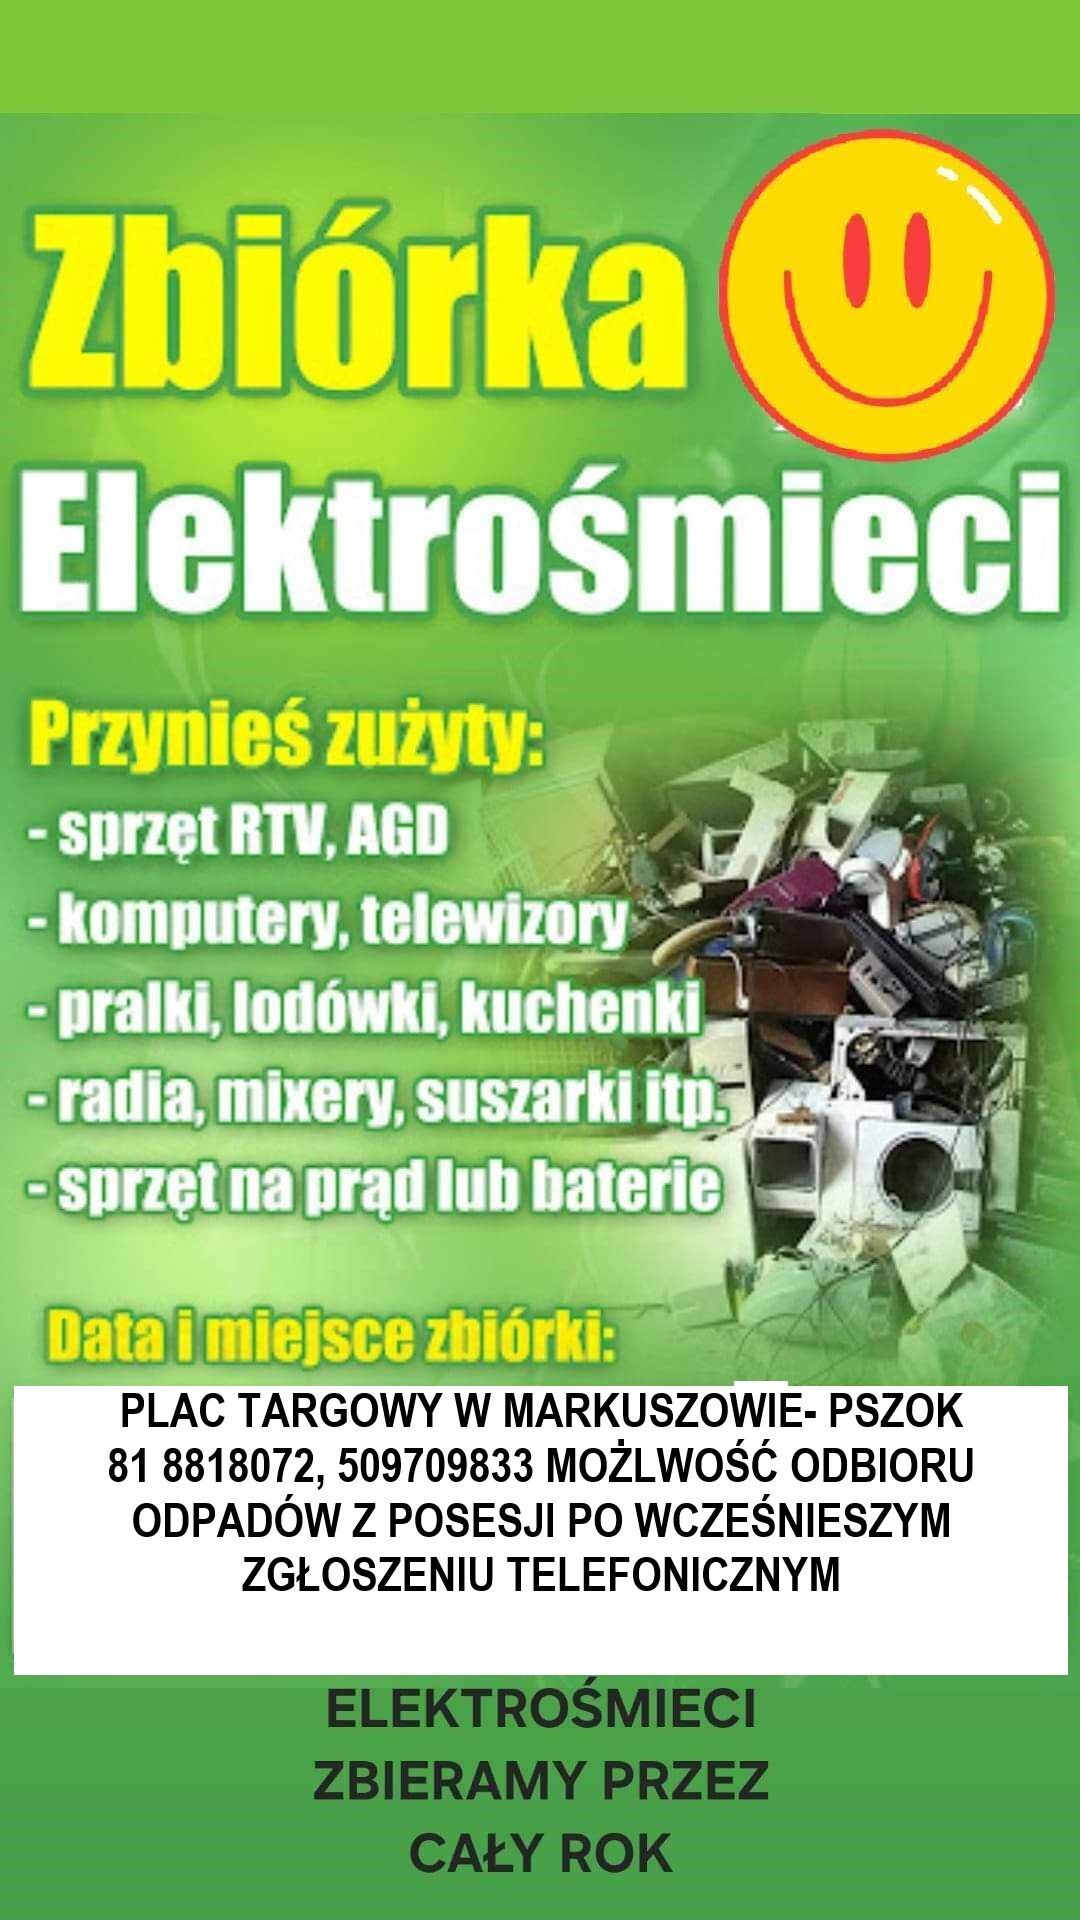 Pionowy plakat z tekstem o zbiórce elektrośmieci w tle zdjęcia z gąszczem różnych rodzajów odpadów elektronicznych, takich jak komputery, pralki i telewizory.